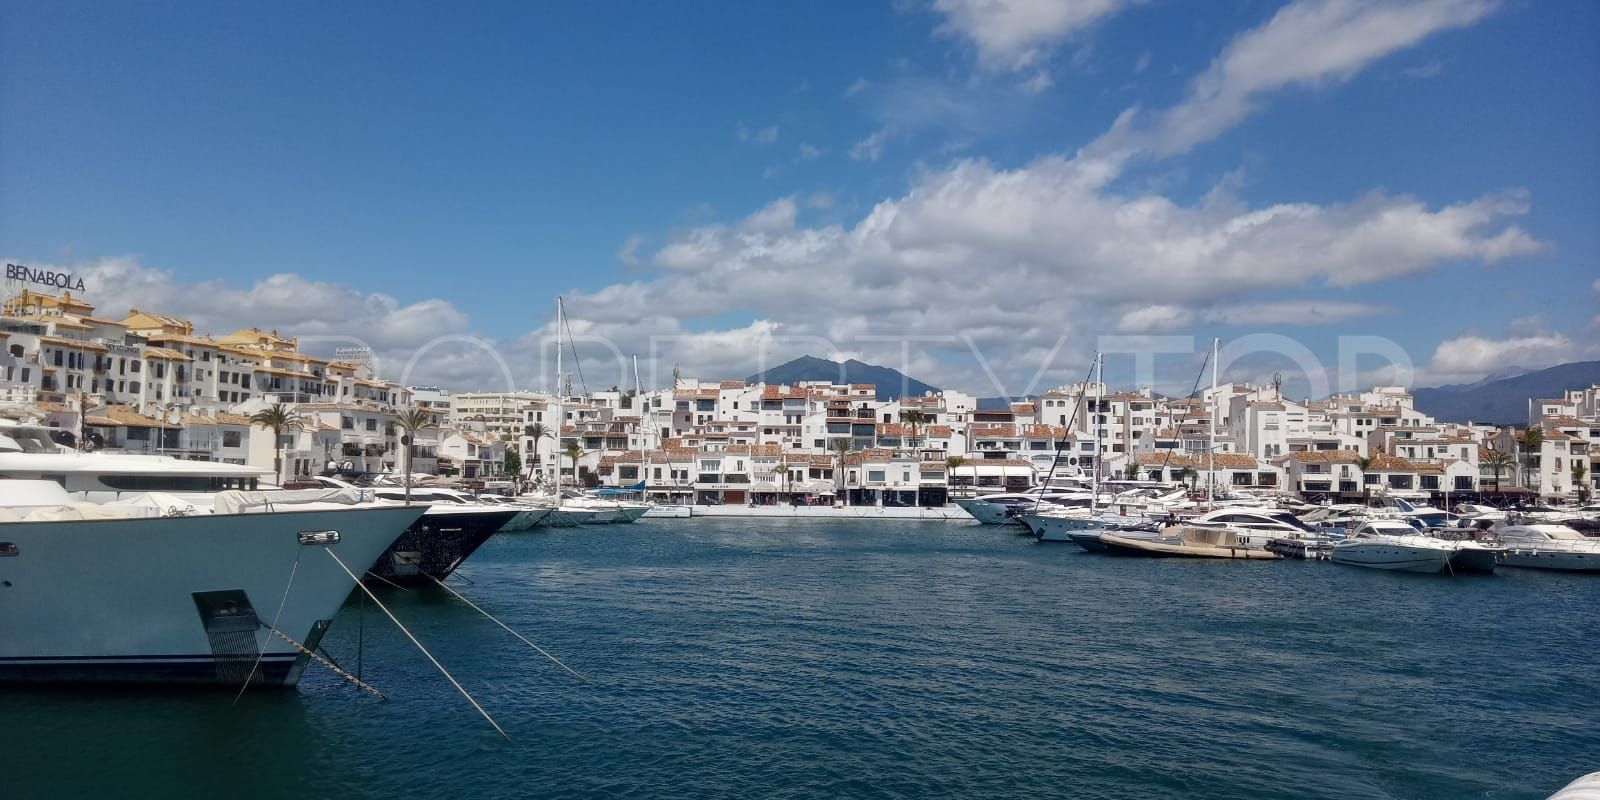 Marbella - Puerto Banus, villa de 6 dormitorios en venta